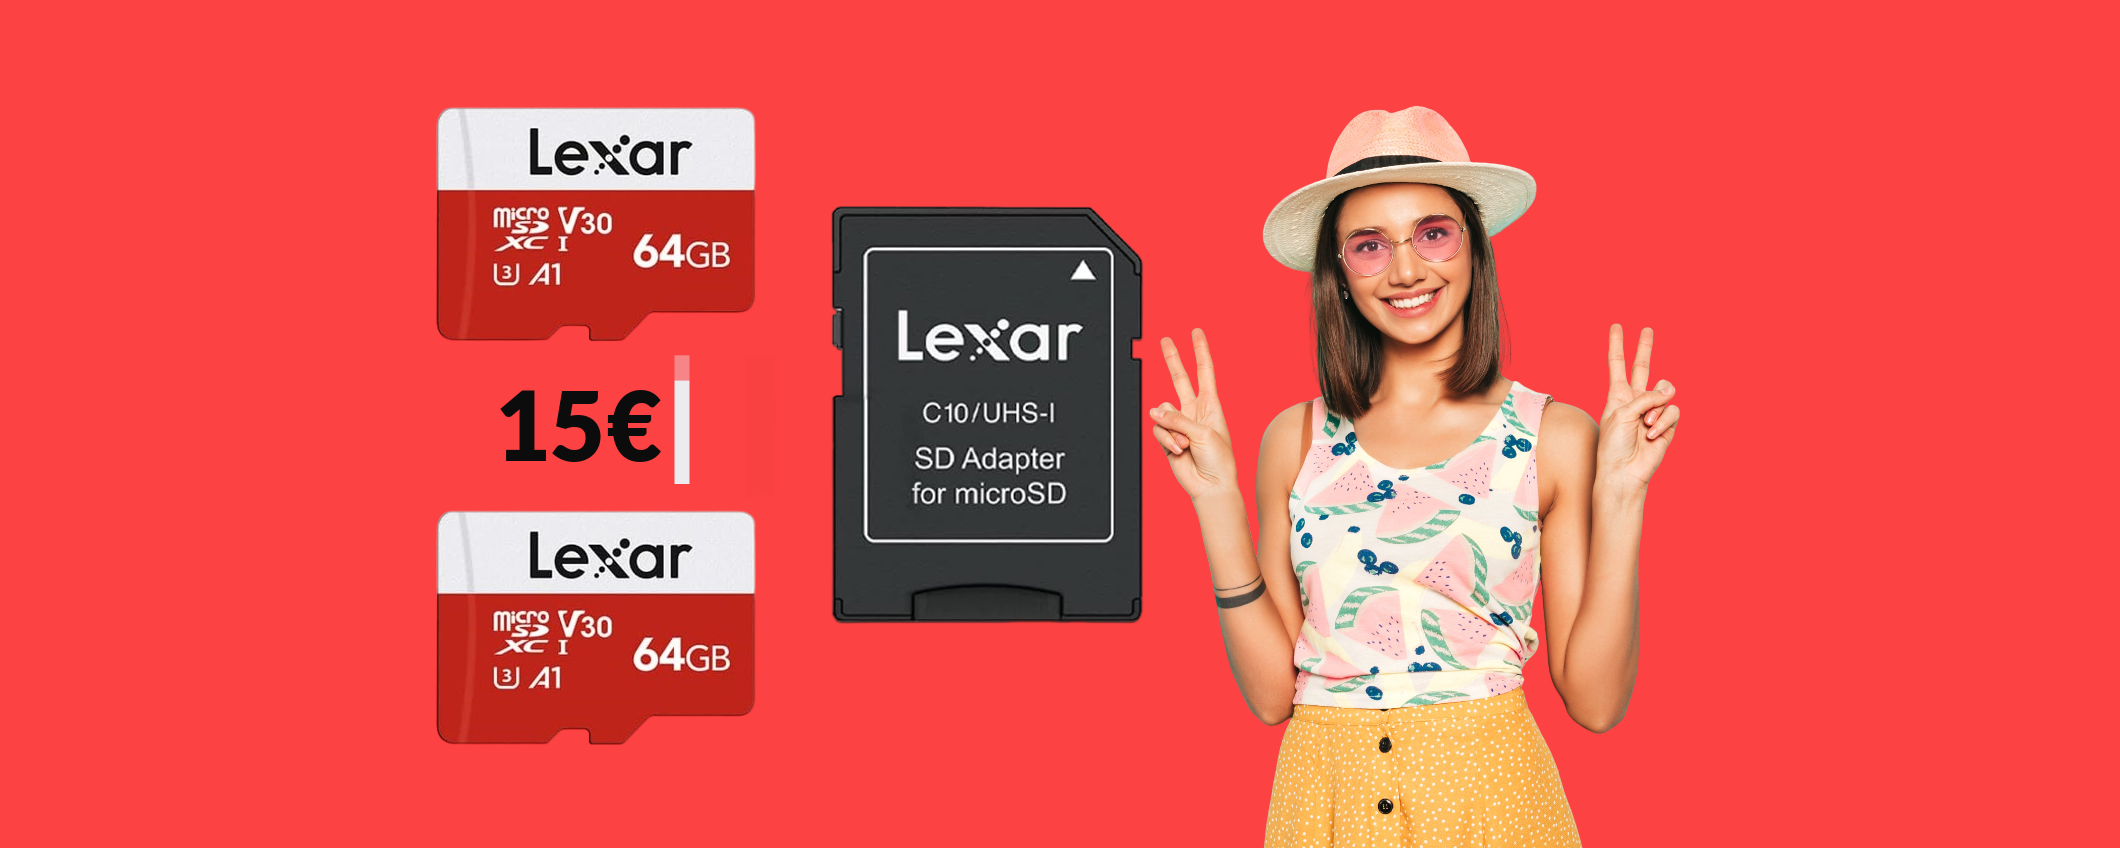 MicroSD 64GB Lexar: con soli 15€ ne prendi DUE invece di una